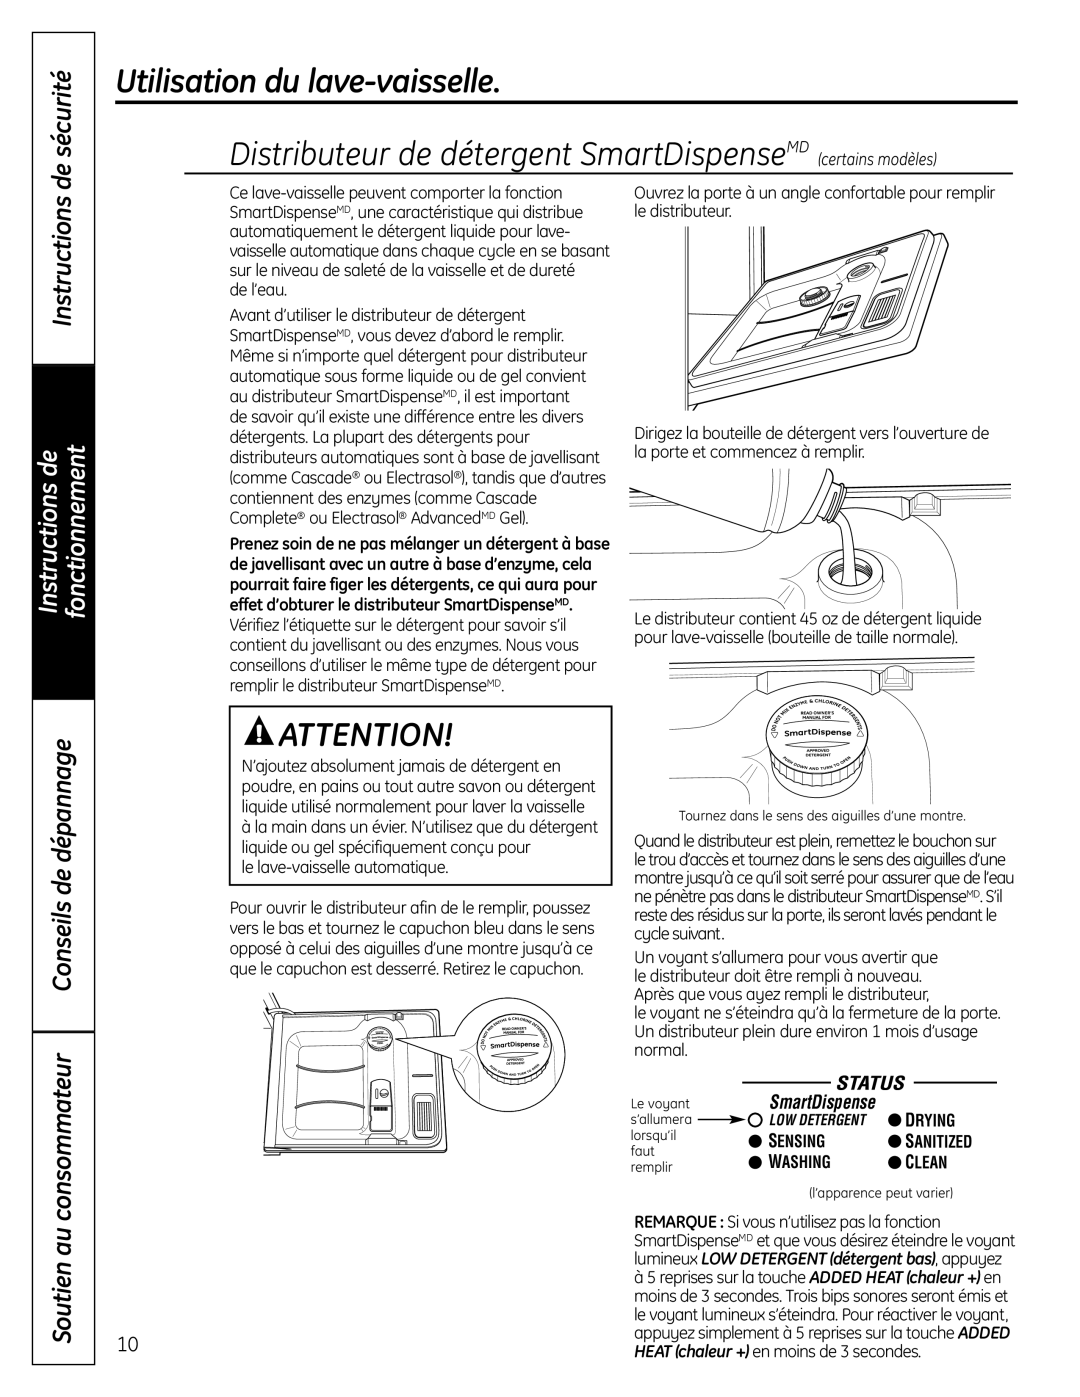 GE CDW9000 Series Distributeur de détergent SmartDispenseMD certains modèles, consommateur Conseils de dépannage, Drying 